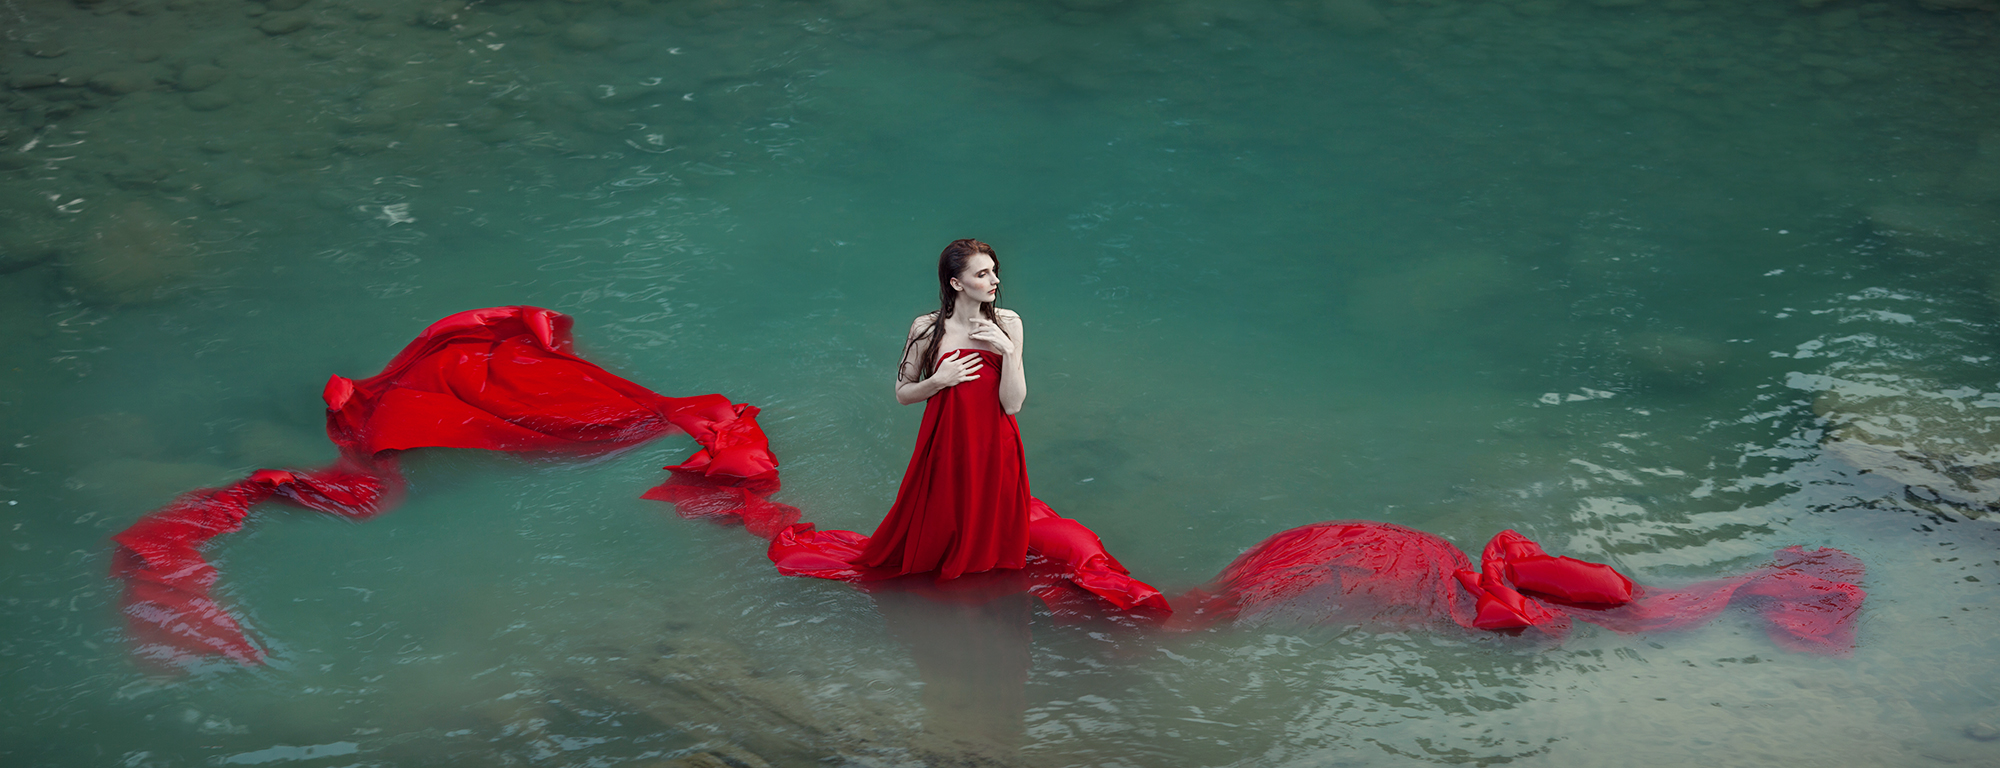 Фото Девушка в красном платье стоит в воде